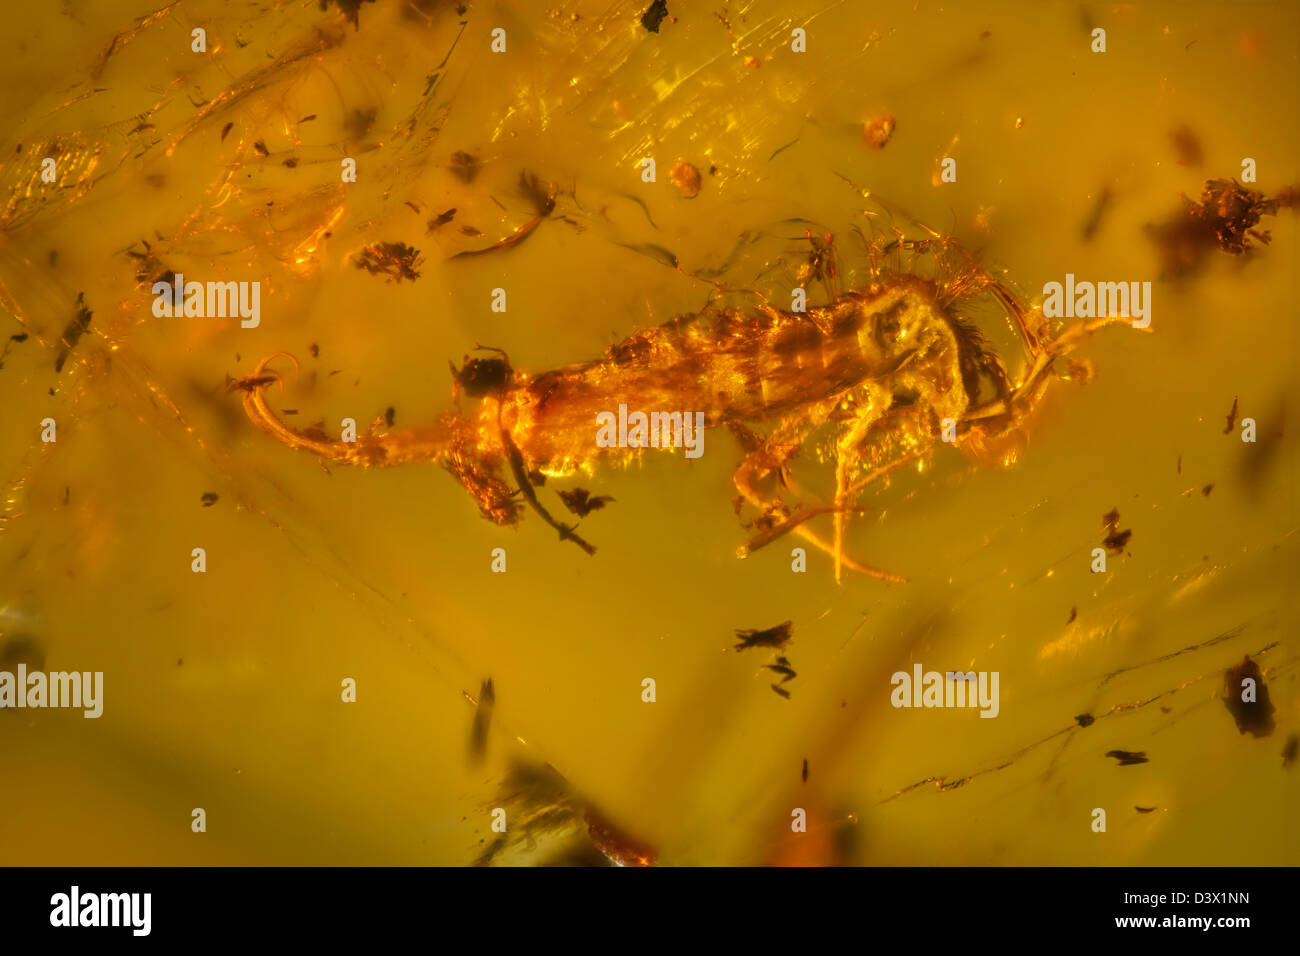 Dominikanischer Bernstein mit Insekten gefangen, Makro-Ansicht von Insekten, die in der Zeit eingefroren Stockfoto